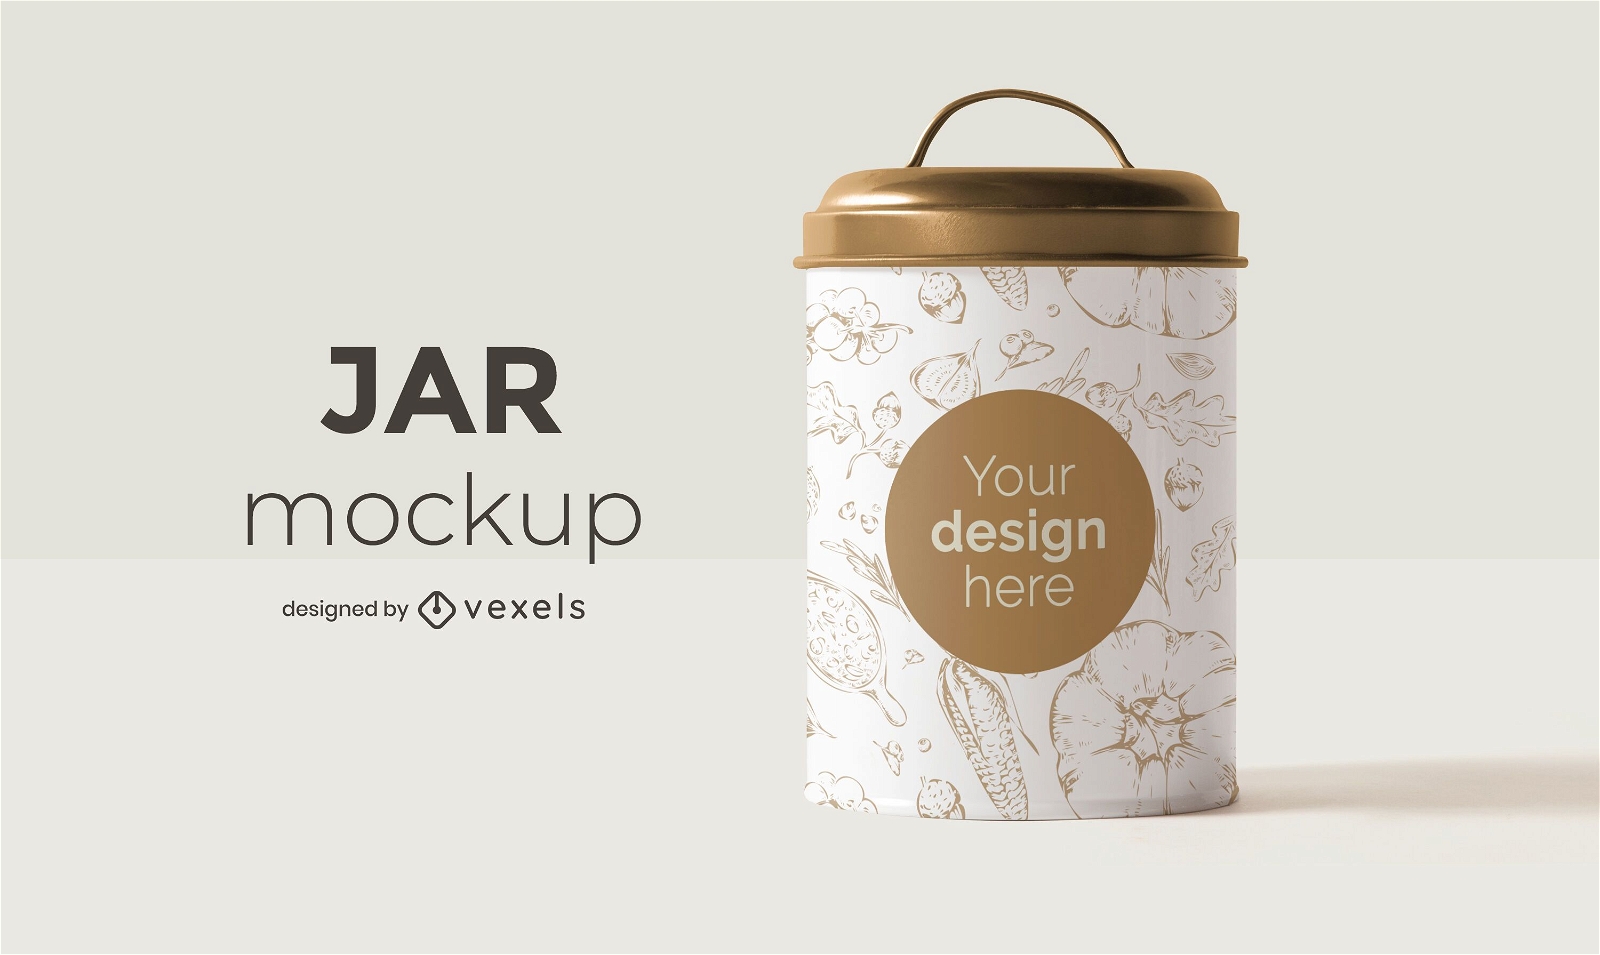 Jar mockup design